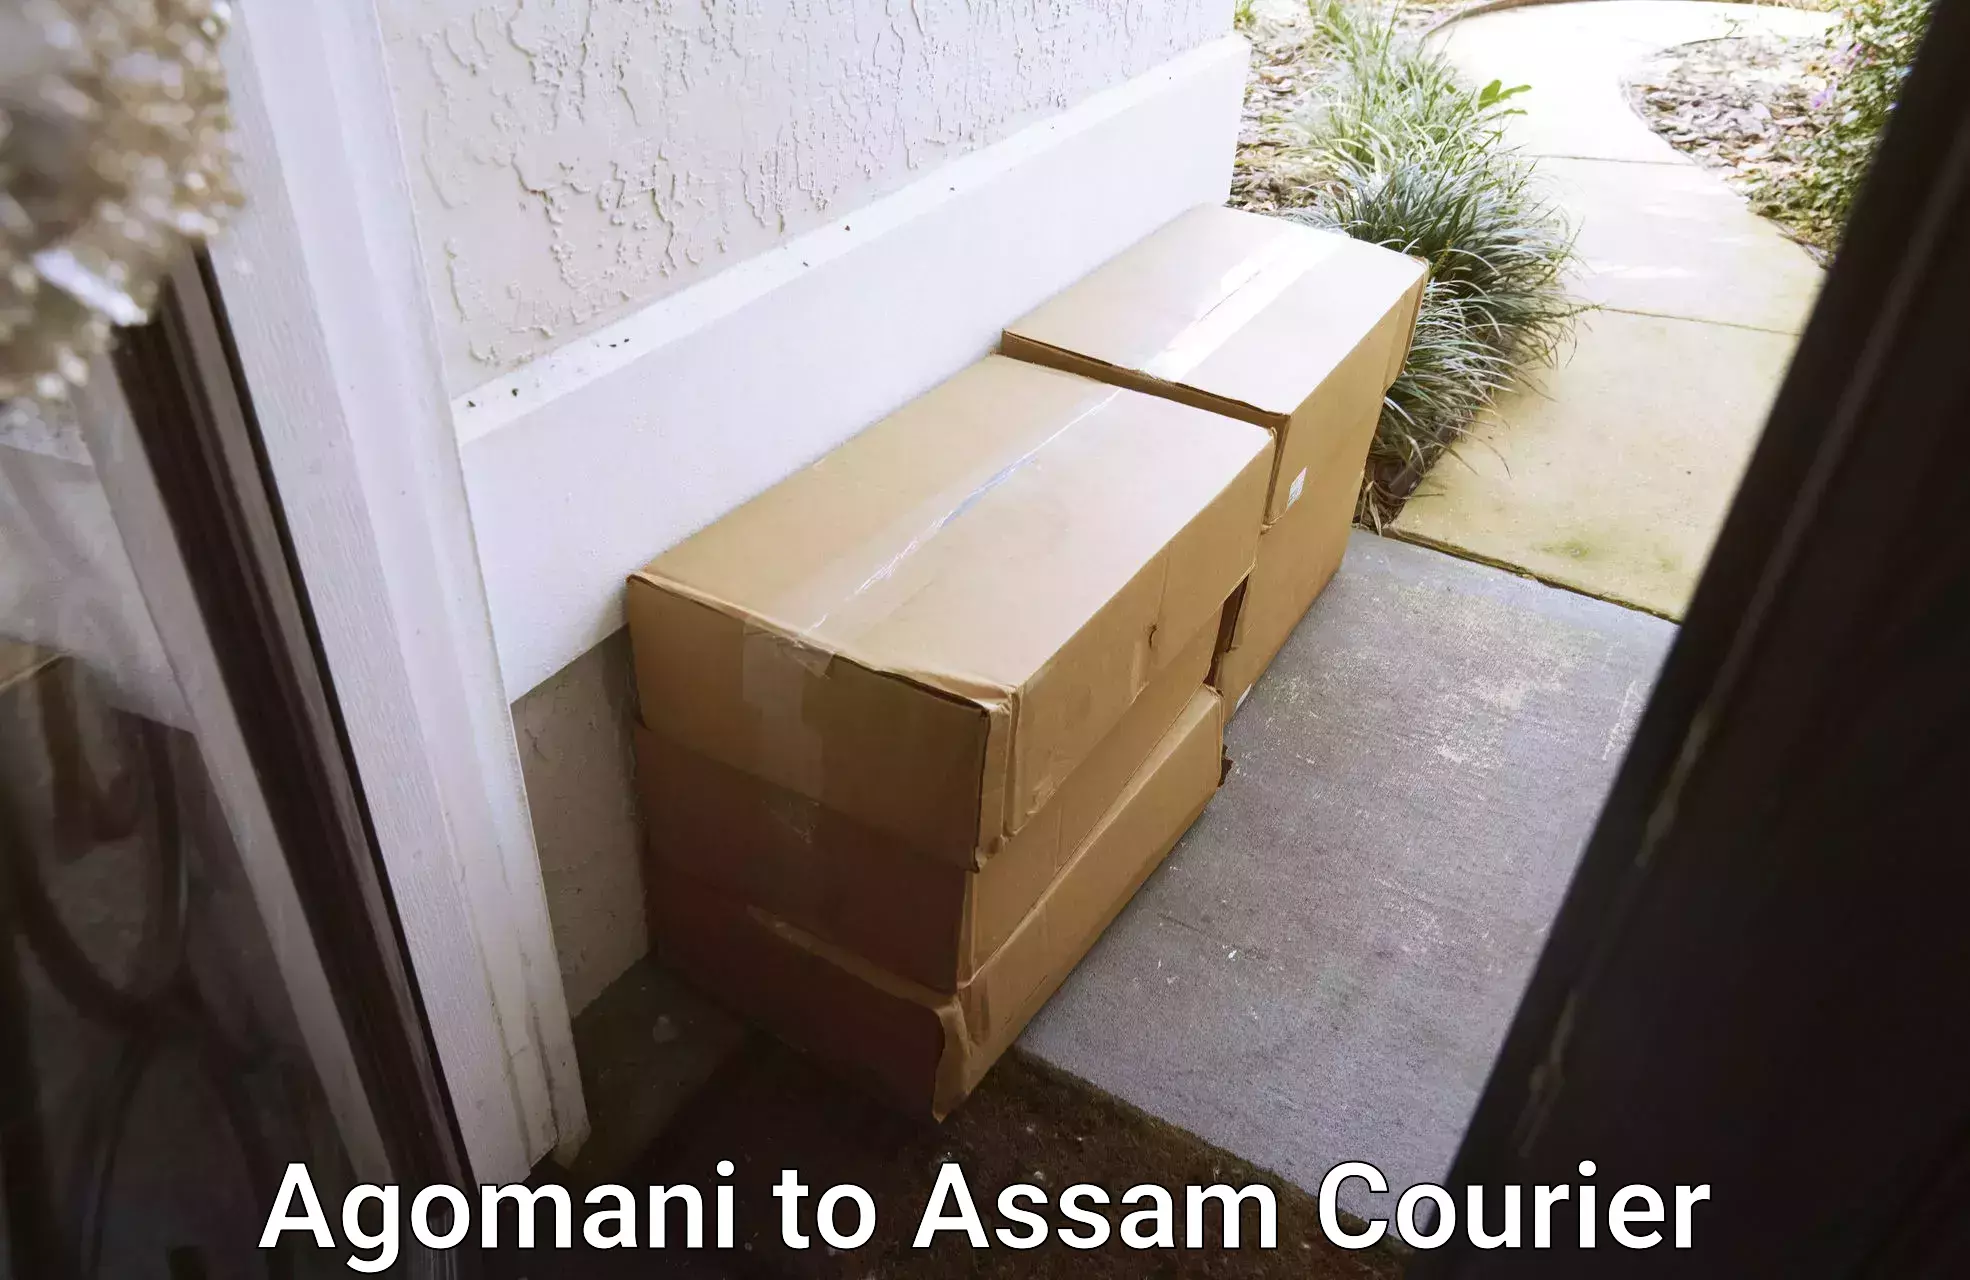 Professional courier services Agomani to Dibrugarh